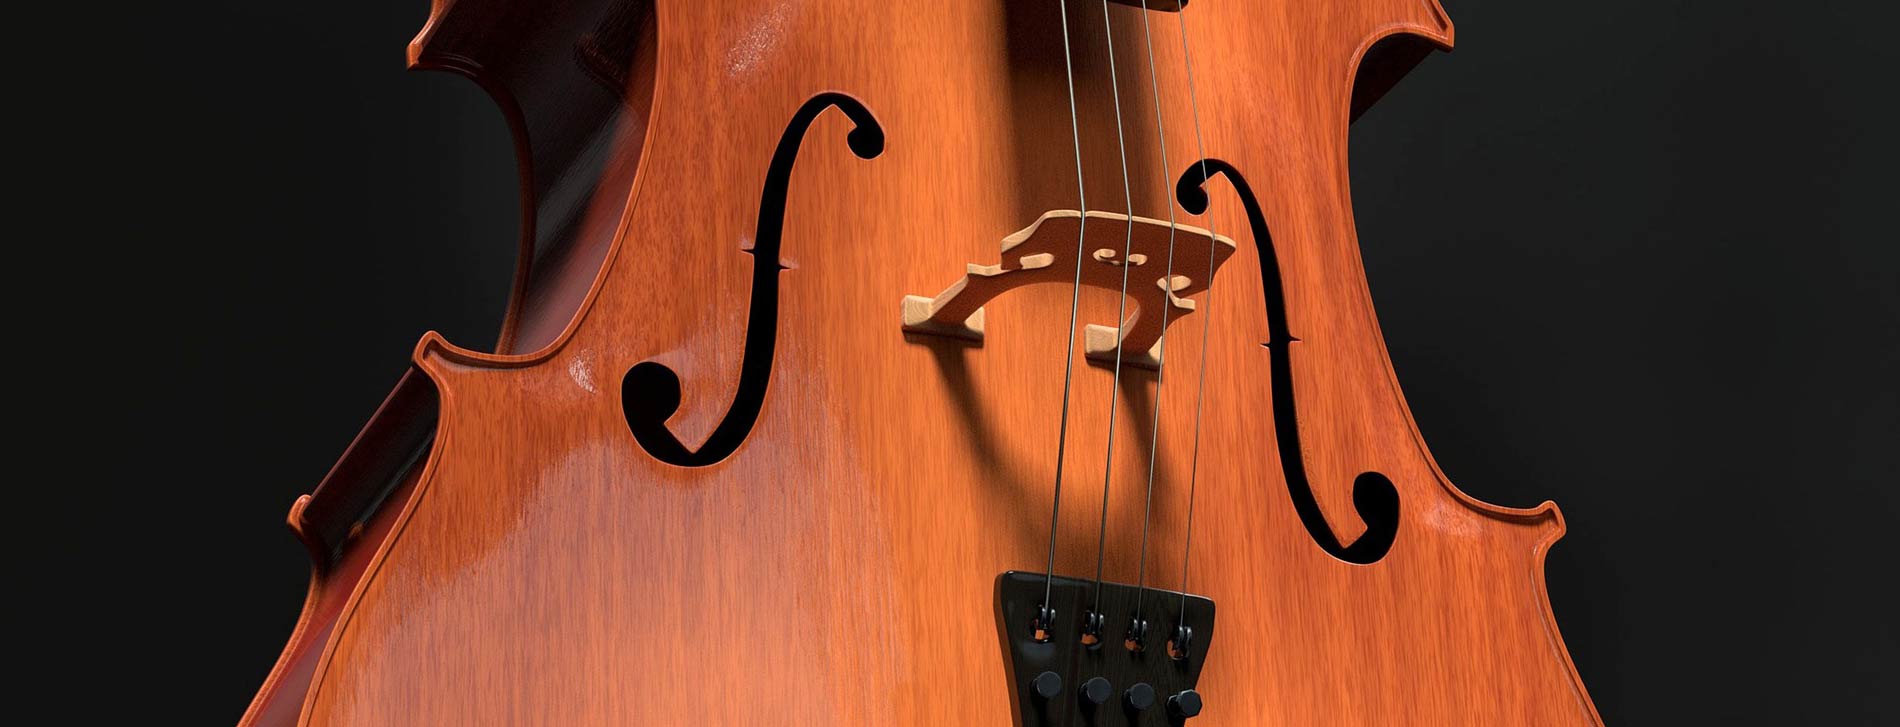 violoncelle-association-française-du-violoncelle